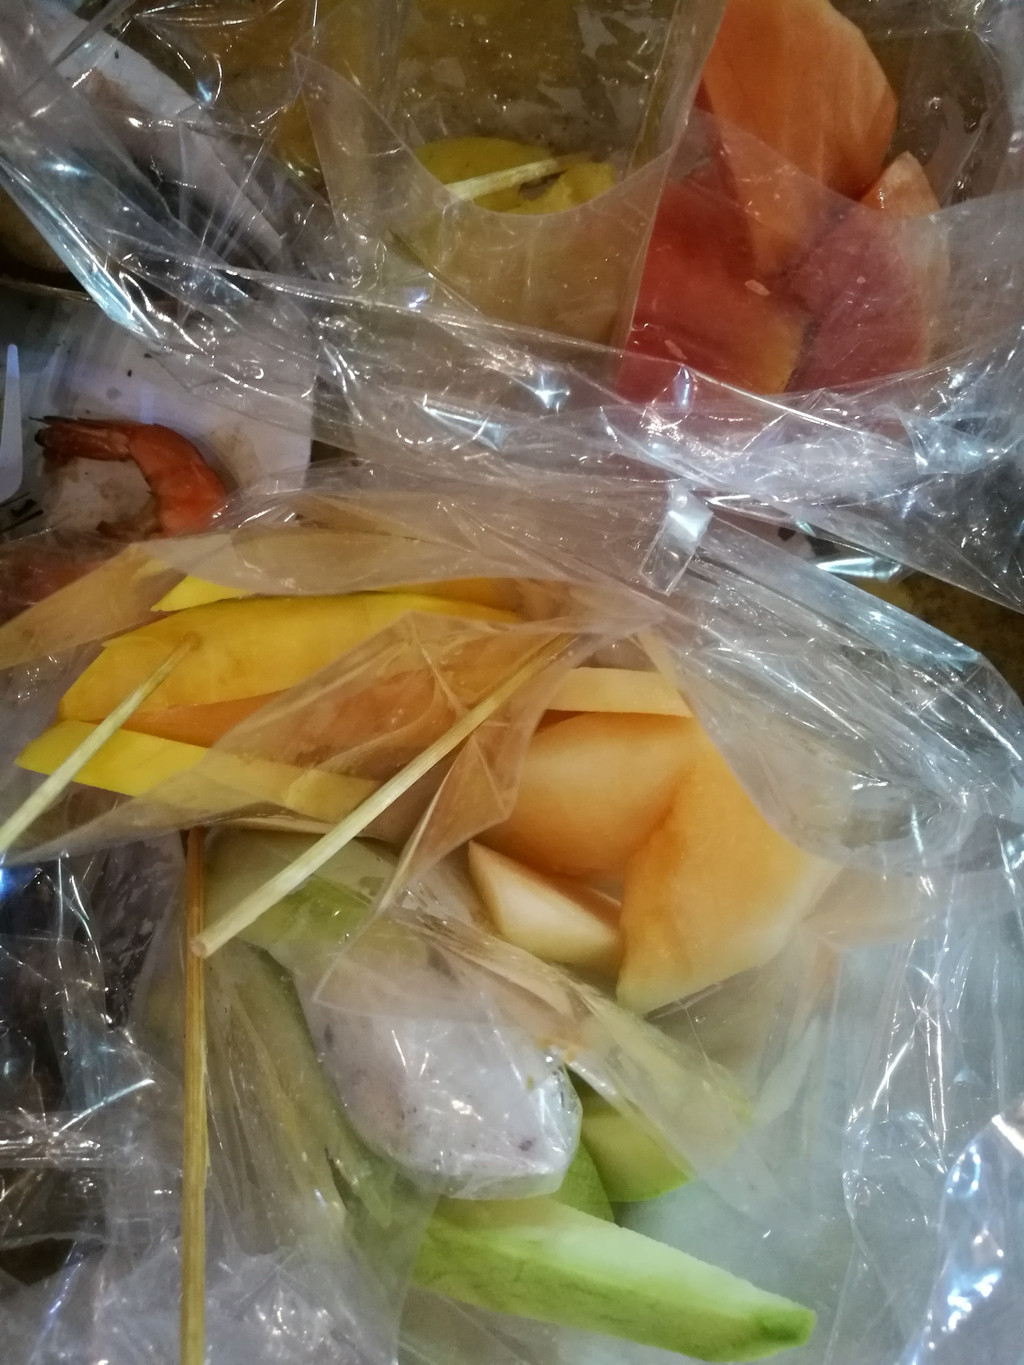 一袋水果20b,买了5袋:芒果,哈密瓜,木瓜,菠萝,青芒果,青芒果太涩太硬